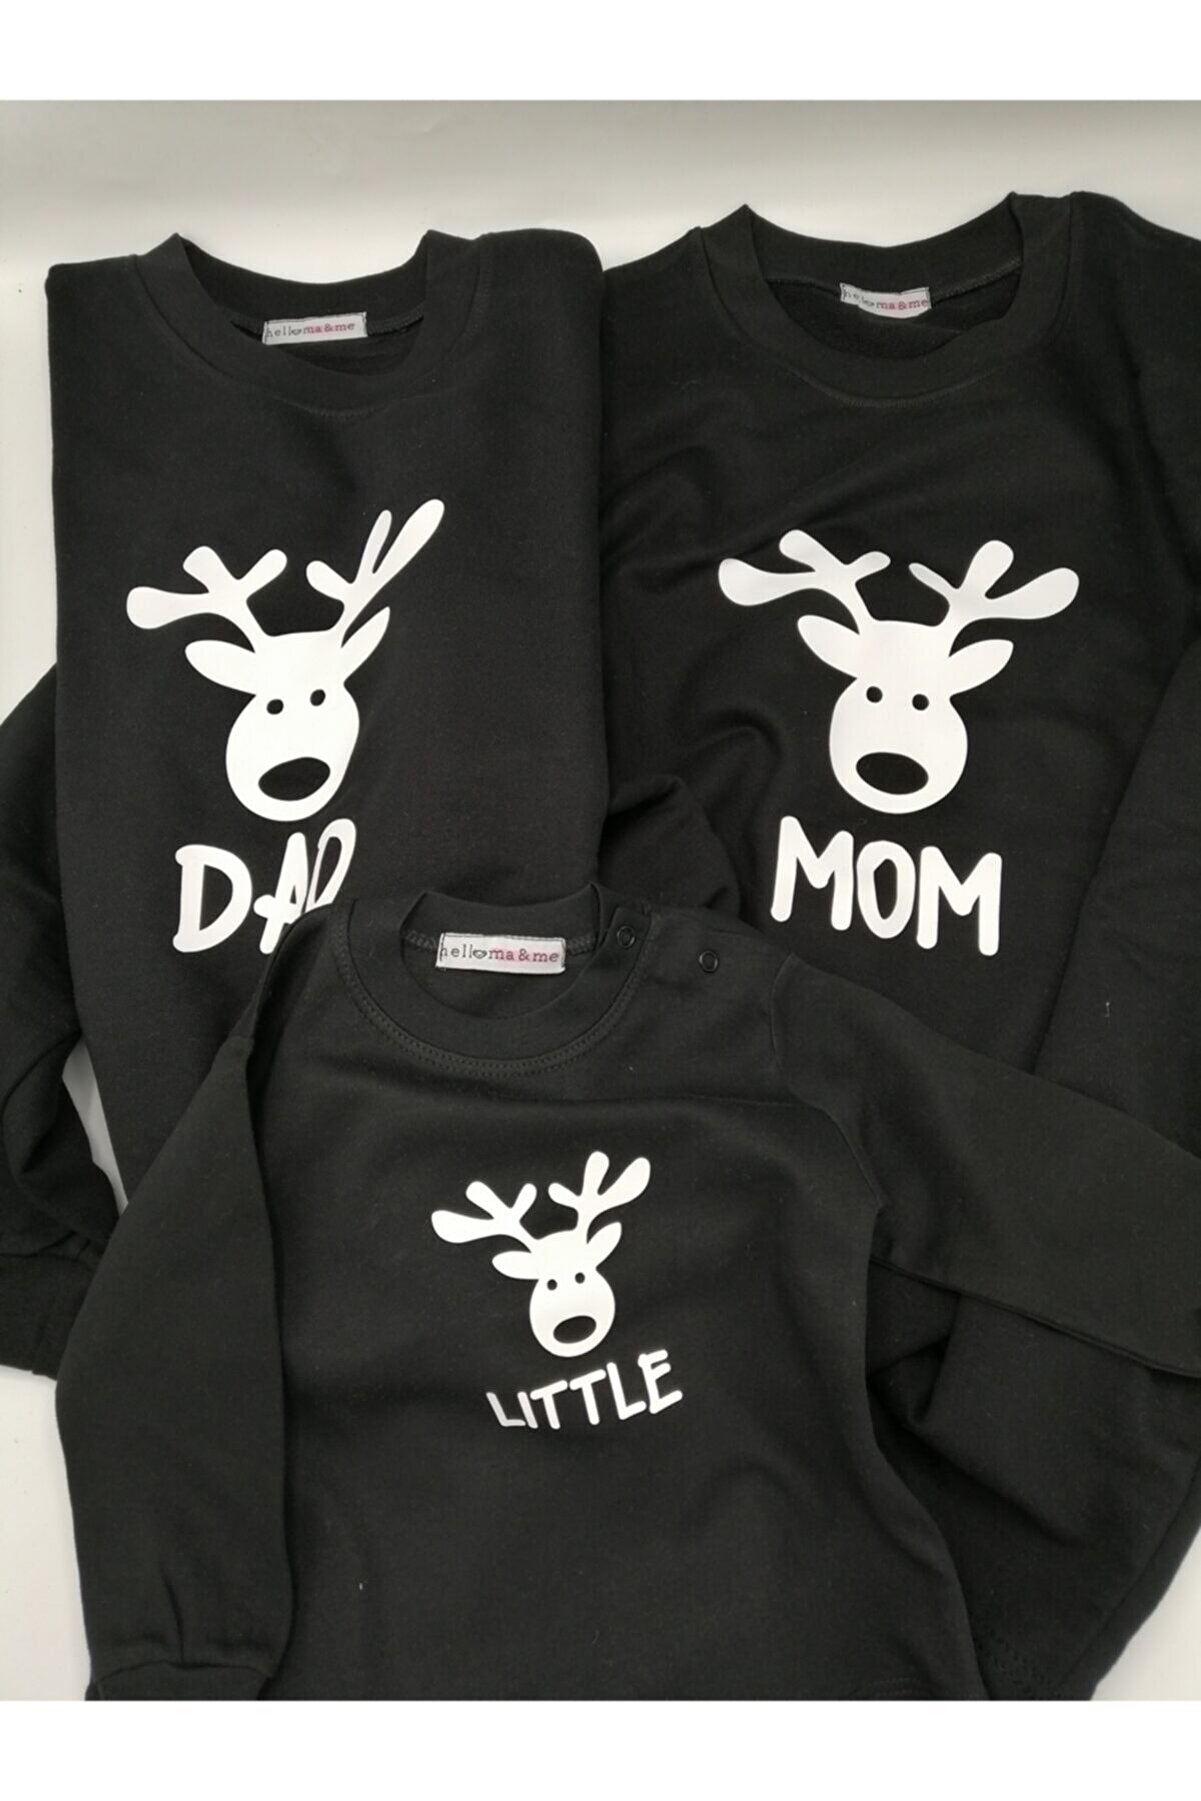 Hellomaandme Geyik Tasarımlı Yılbaşı Aile Sweatshirt Seti Siyah Set